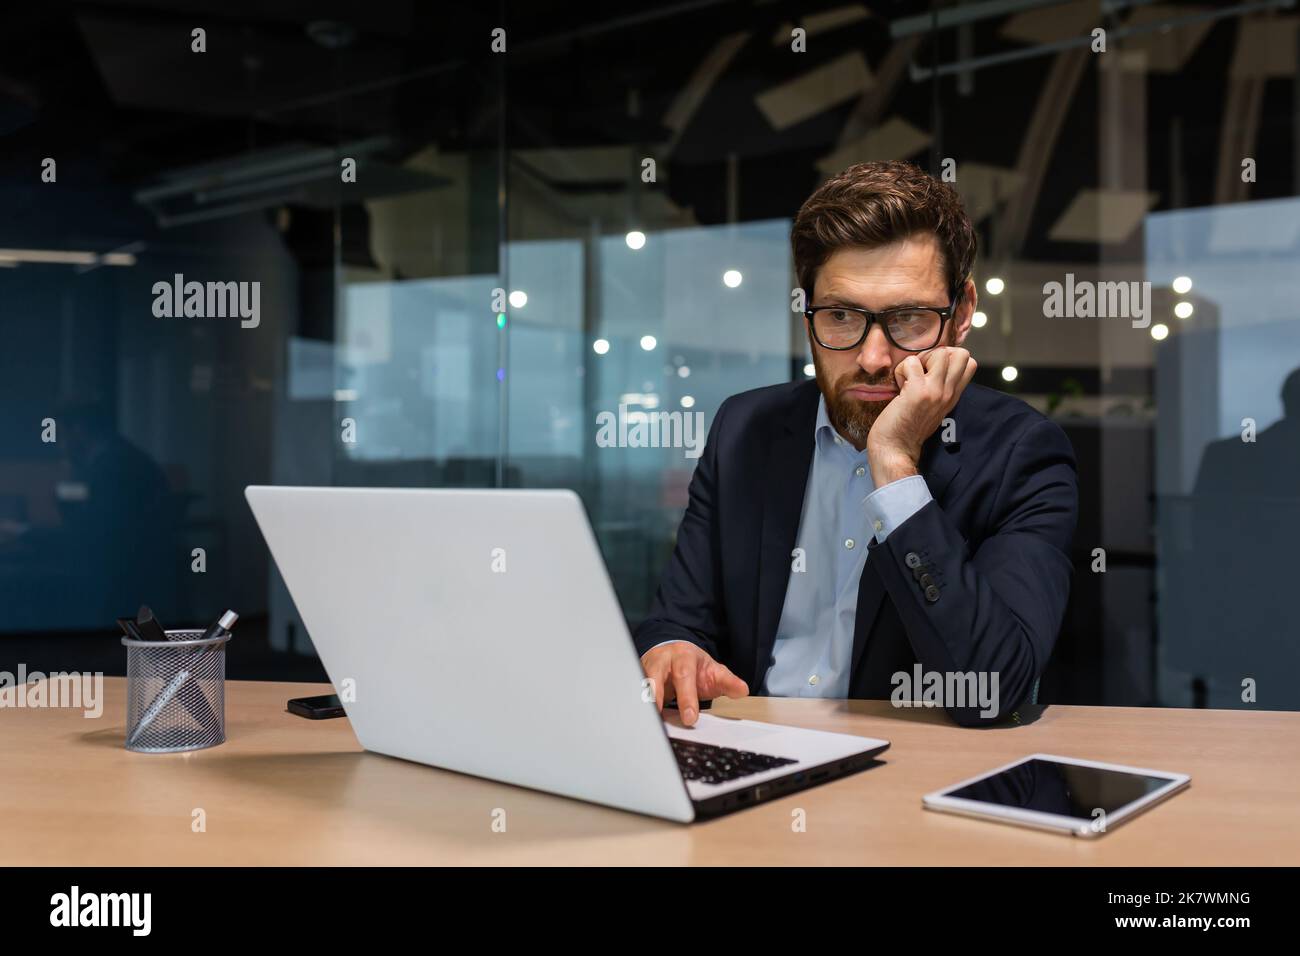 Trauriger und depressiver Geschäftsmann in Depressionen, der in einem modernen Bürogebäude arbeitet, Mann im Geschäftsanzug mit Brille und Bart, der Laptop für die Arbeit verwendet, Chef enttäuscht vom Arbeitsergebnis. Stockfoto